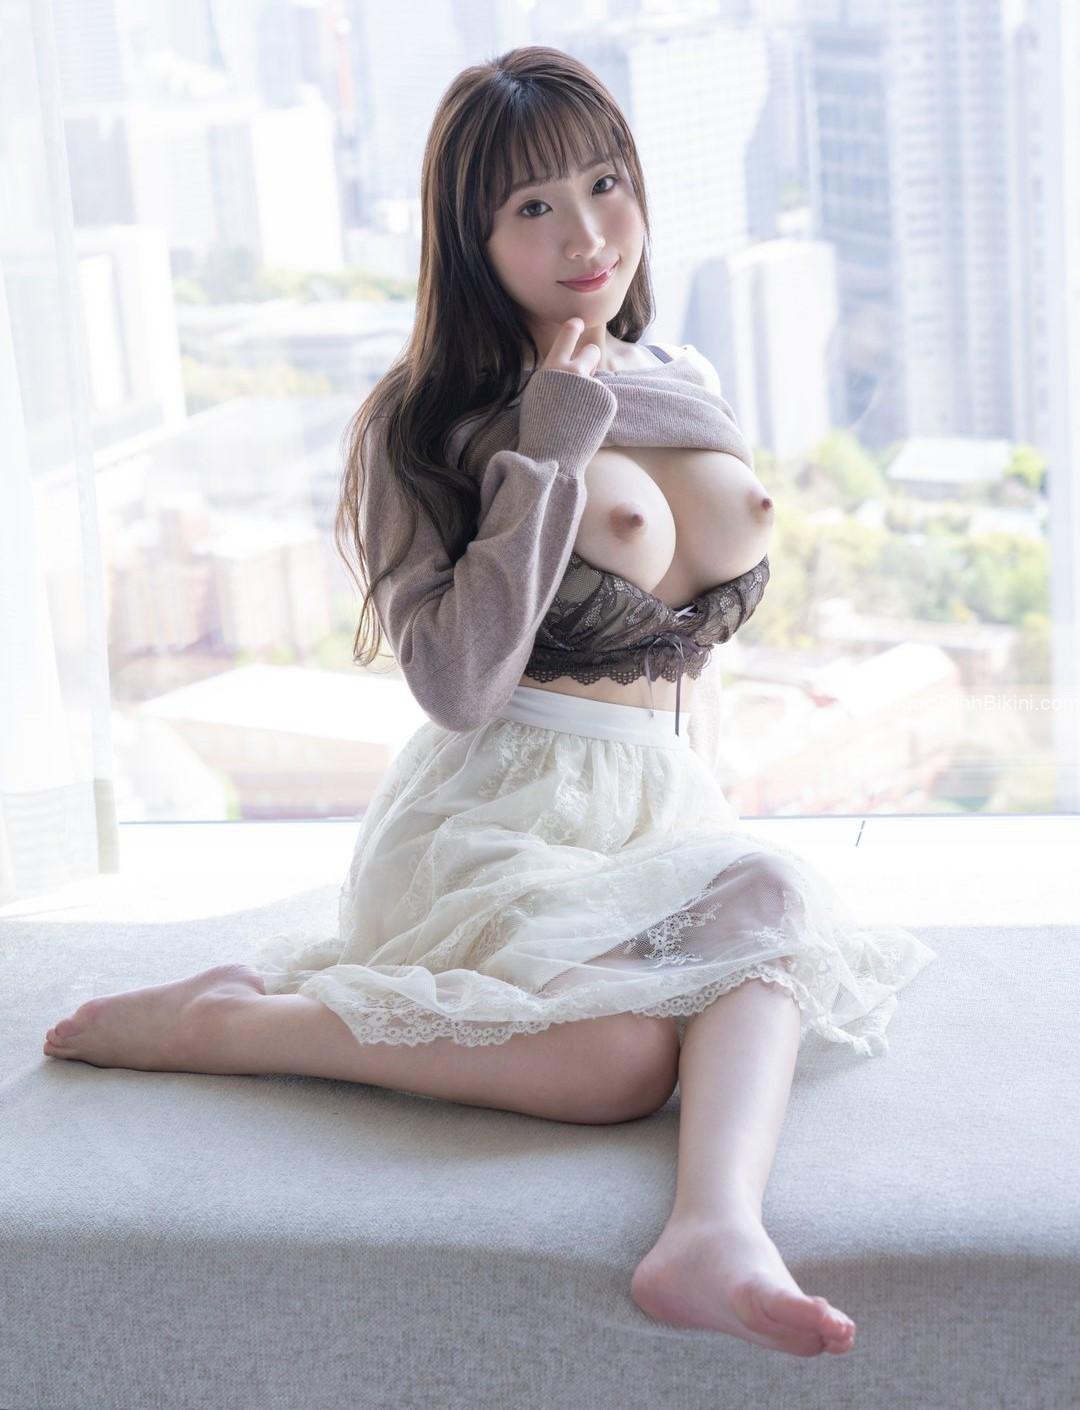 Em gái Nhật để lộ ngực trần 100%